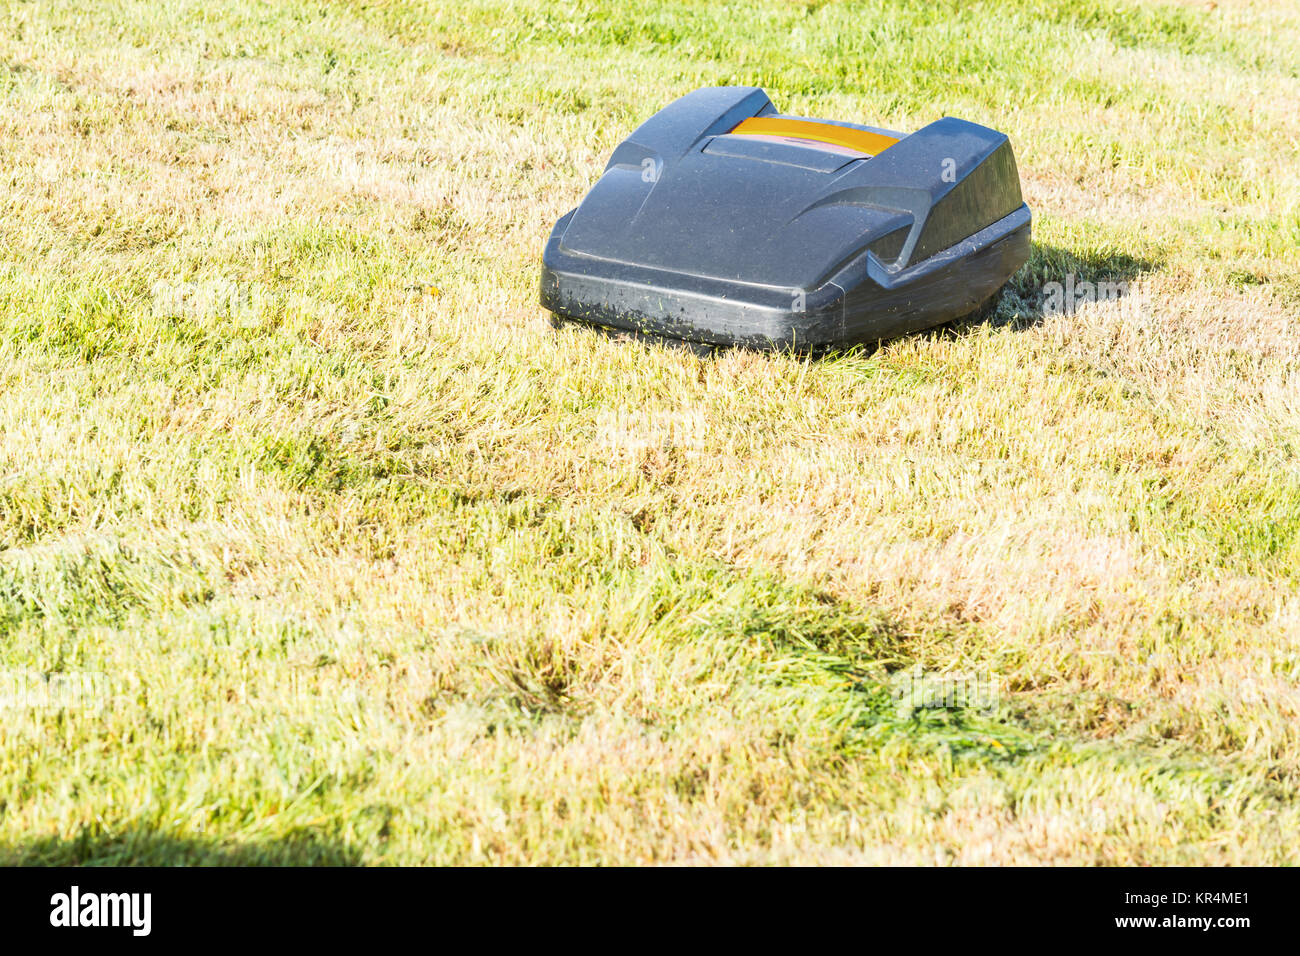 Rasenmäher Roboter, Automatische Rasenmäher mäht Gras in einem Garten. Stock Photo